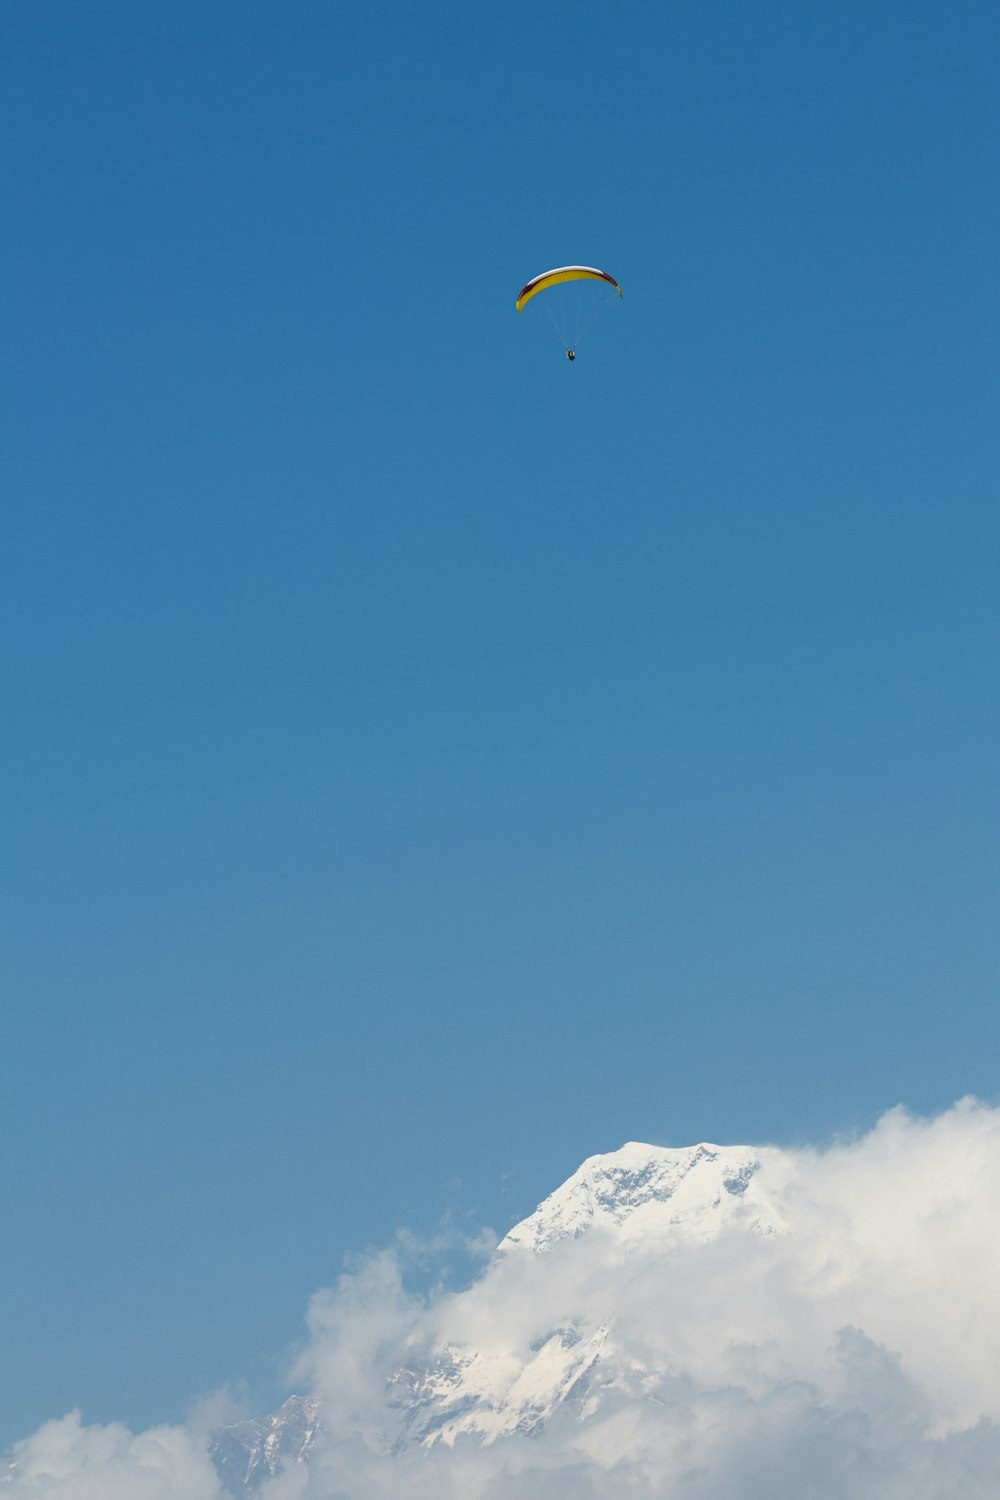 눈 덮인 산 위를 날고 있는 패러글라이더